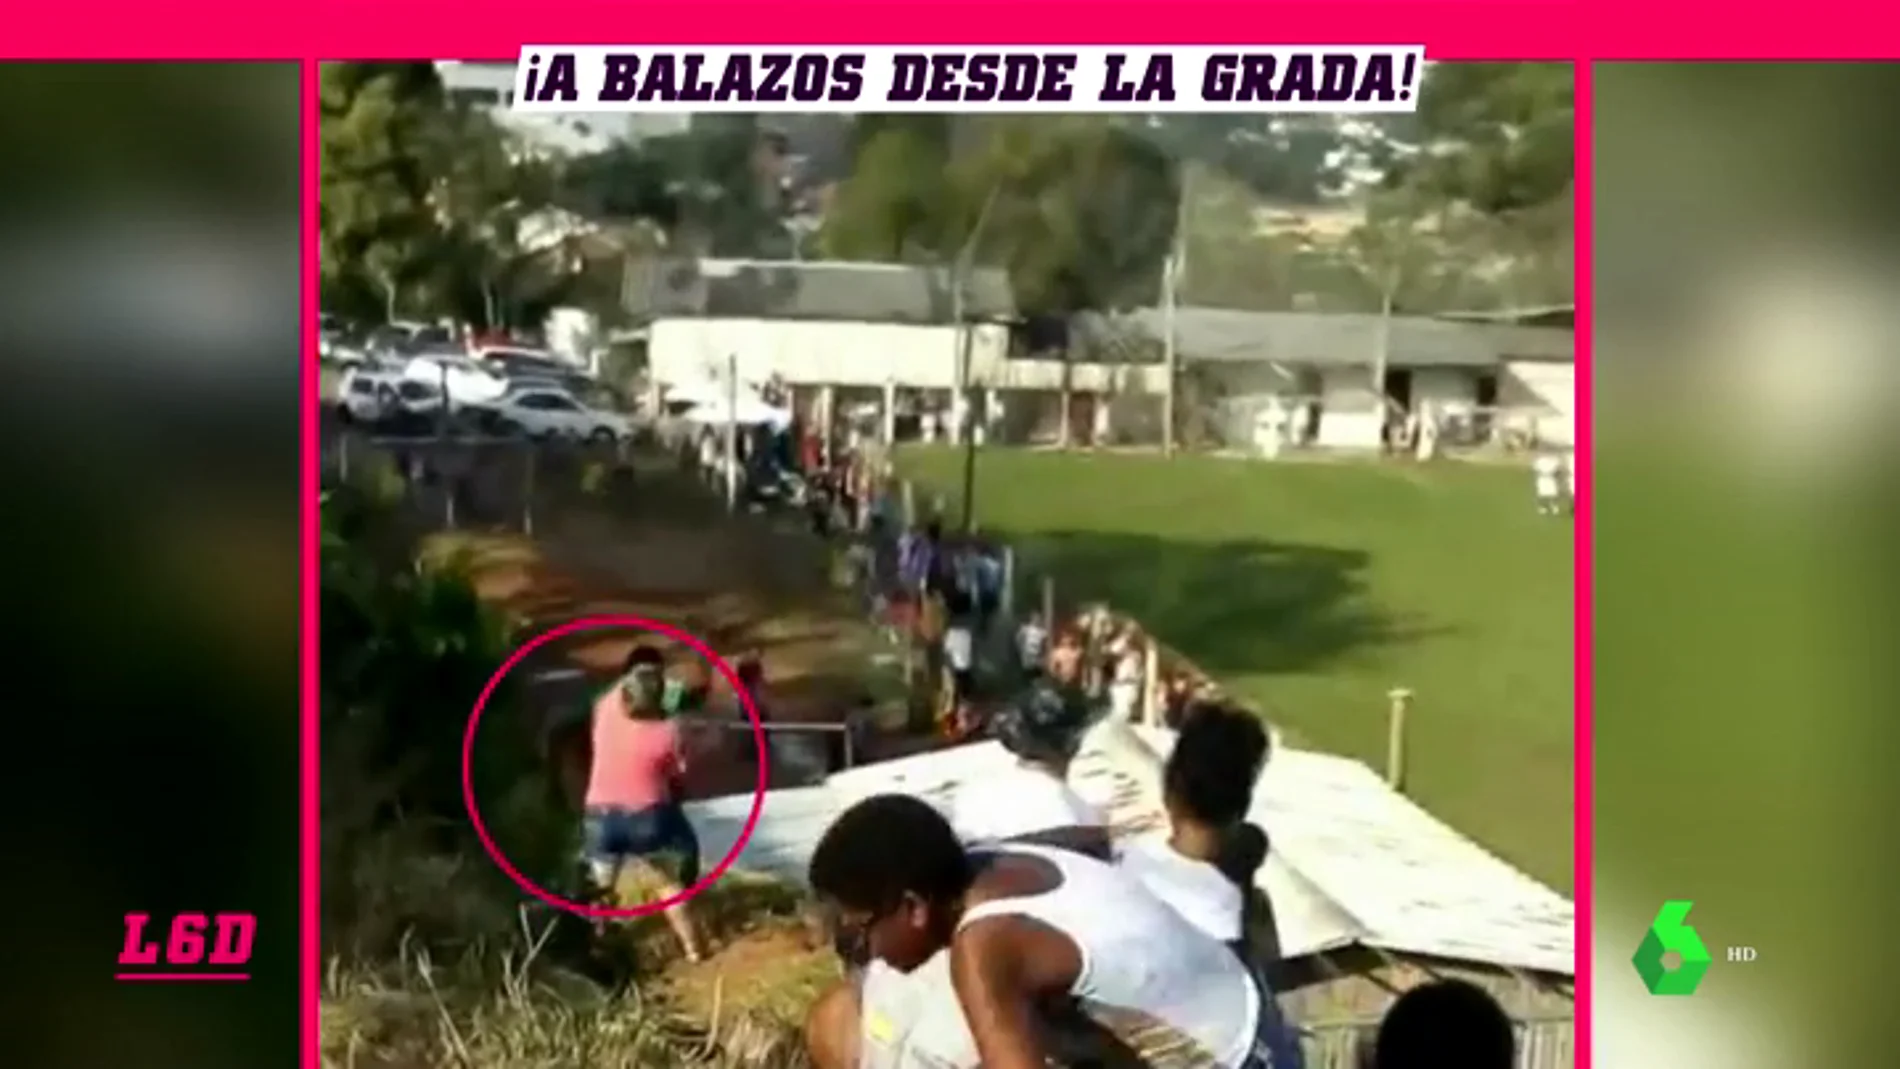 Un hombre dispara un arma en mitad de una tangana durante un partido en Brasil